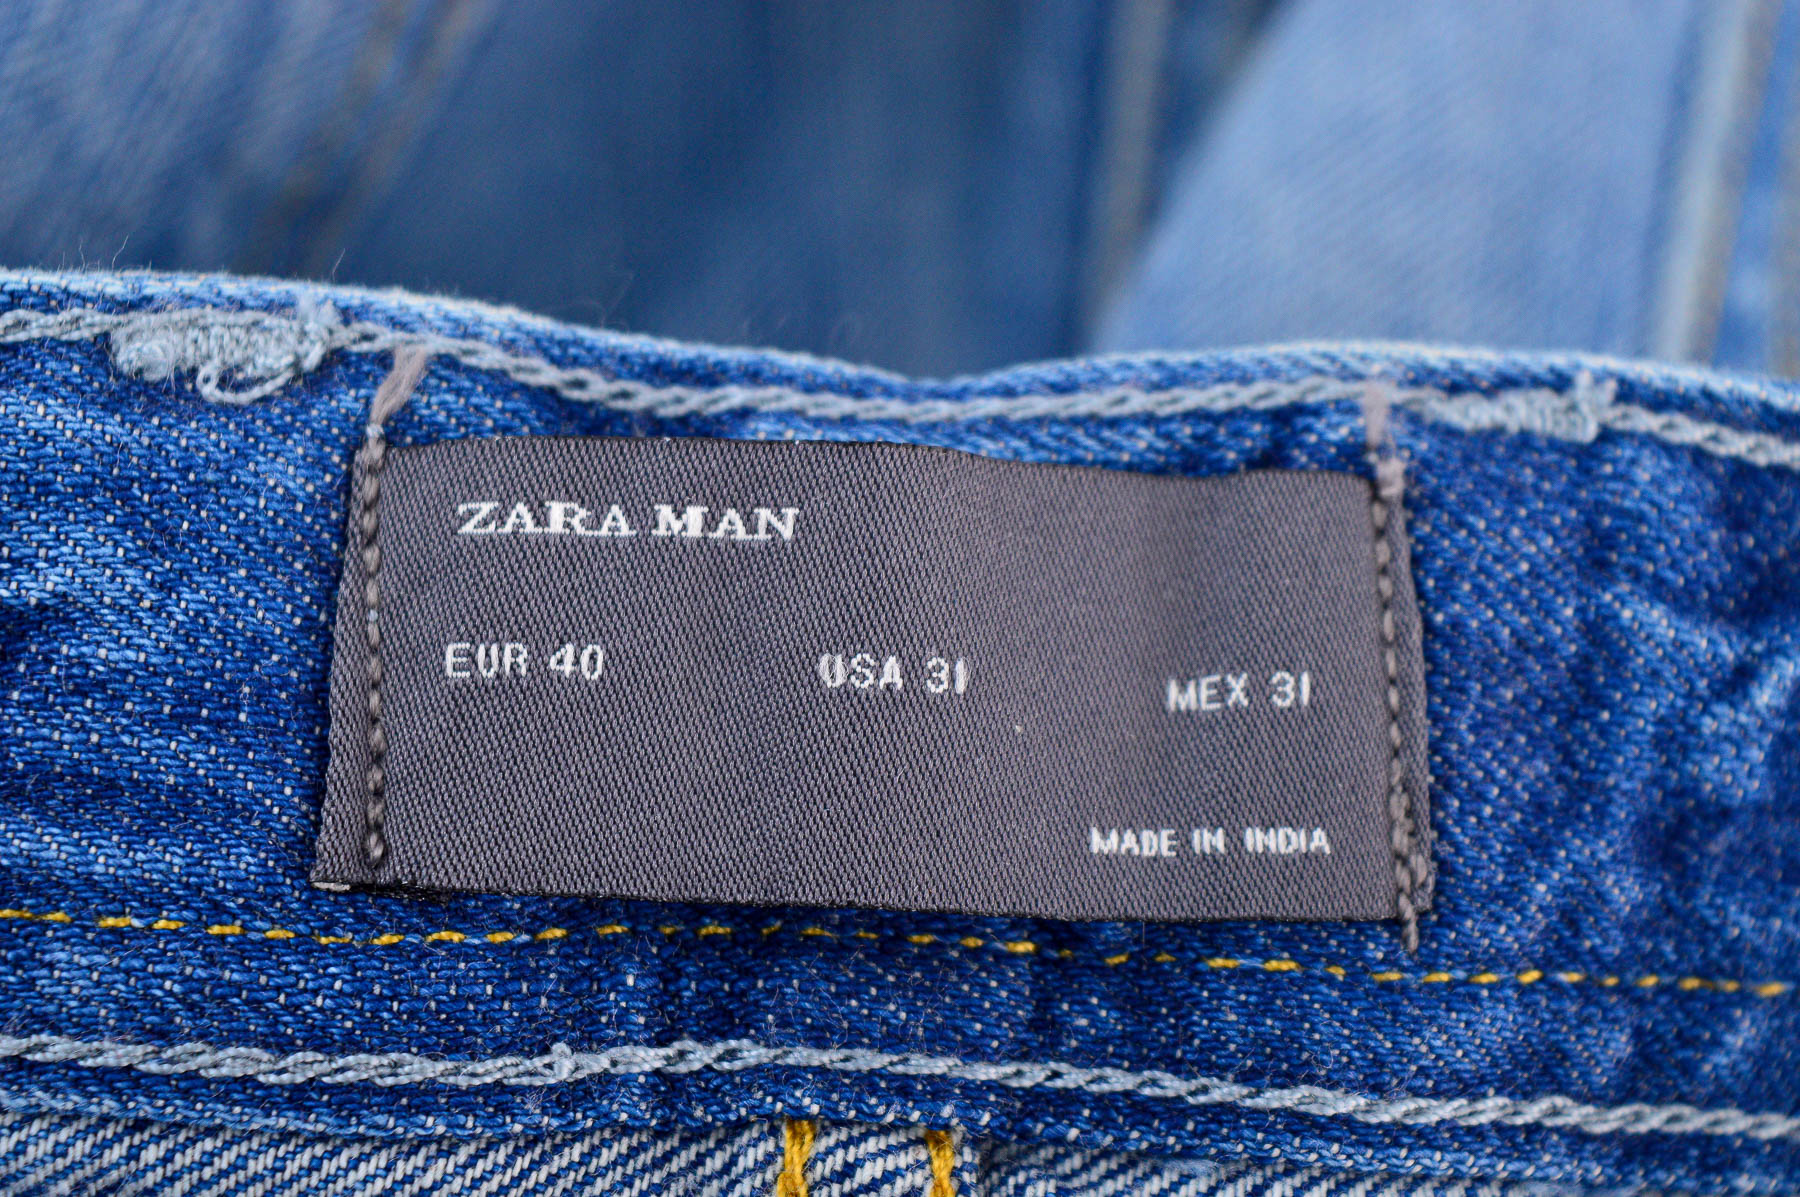 Jeans pentru bărbăți - ZARA Man - 2